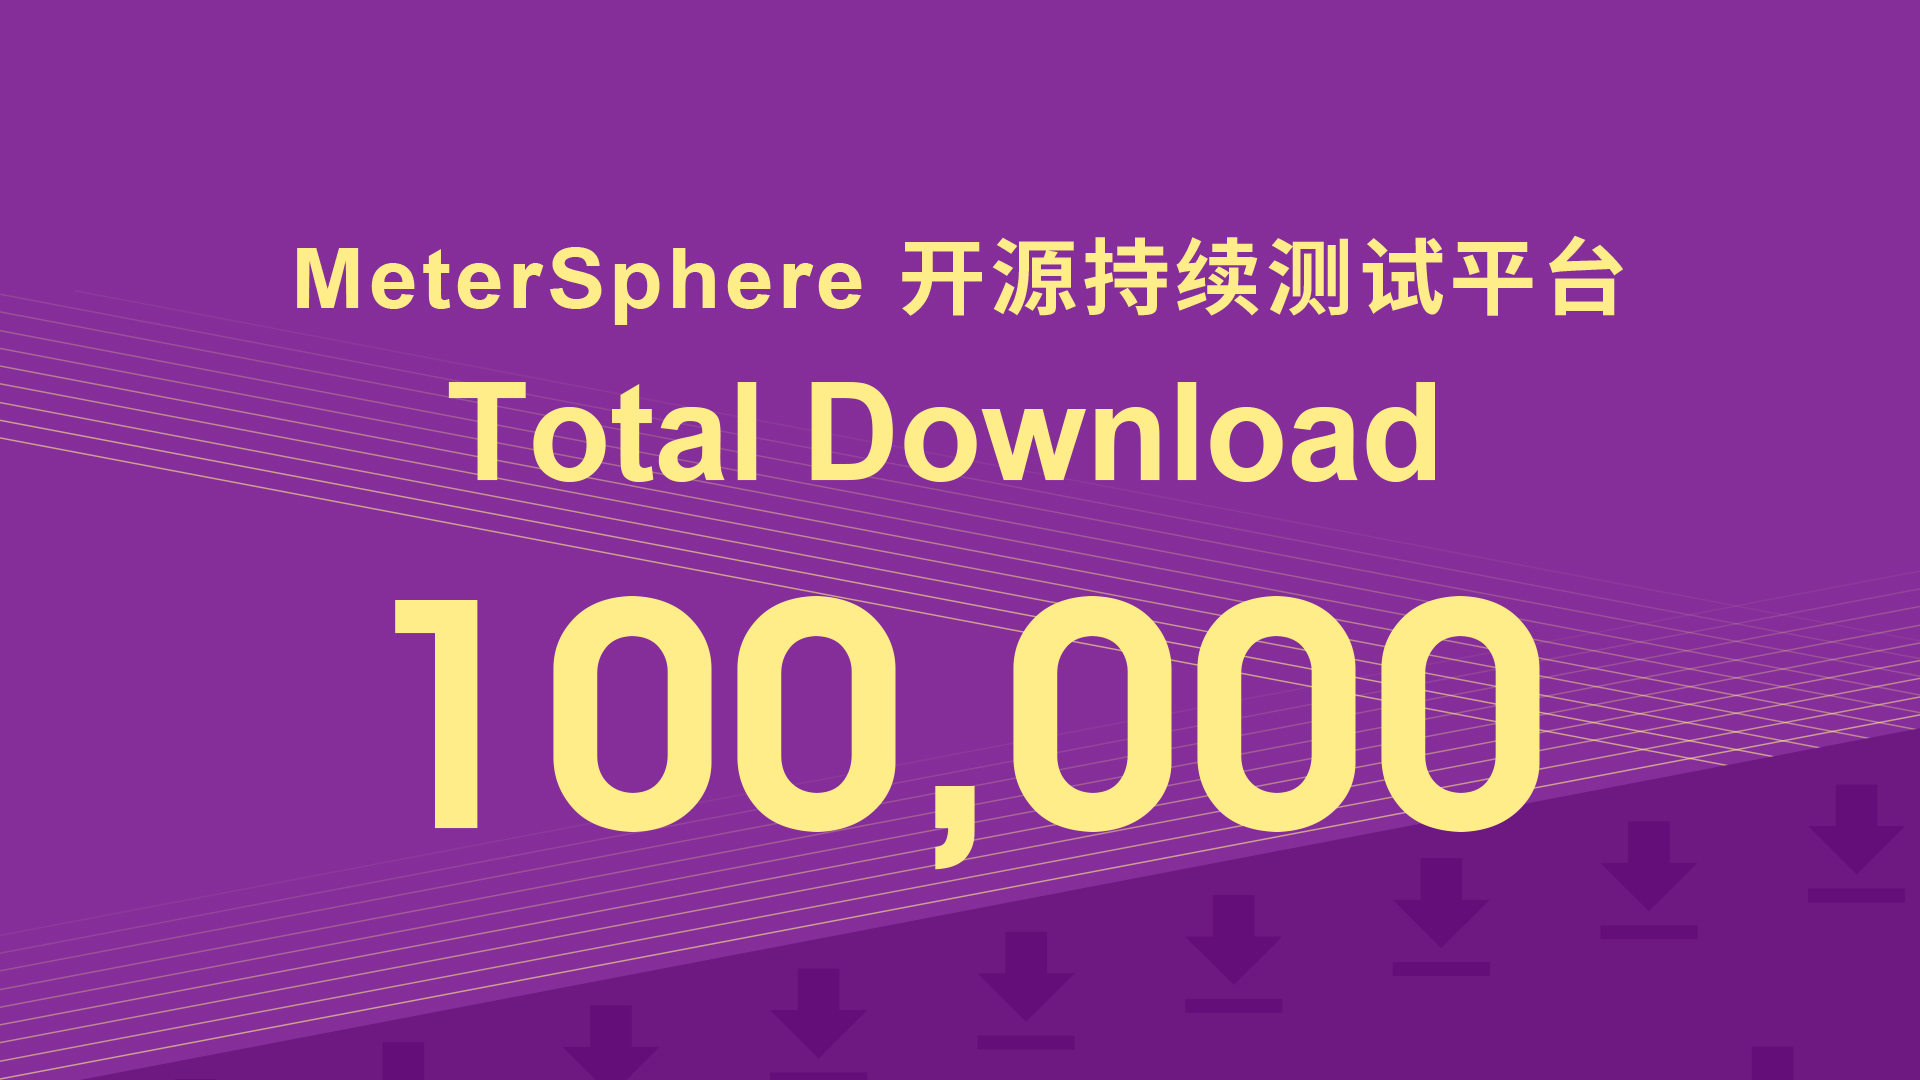 MeterSphere开源项目下载超过100,000次！